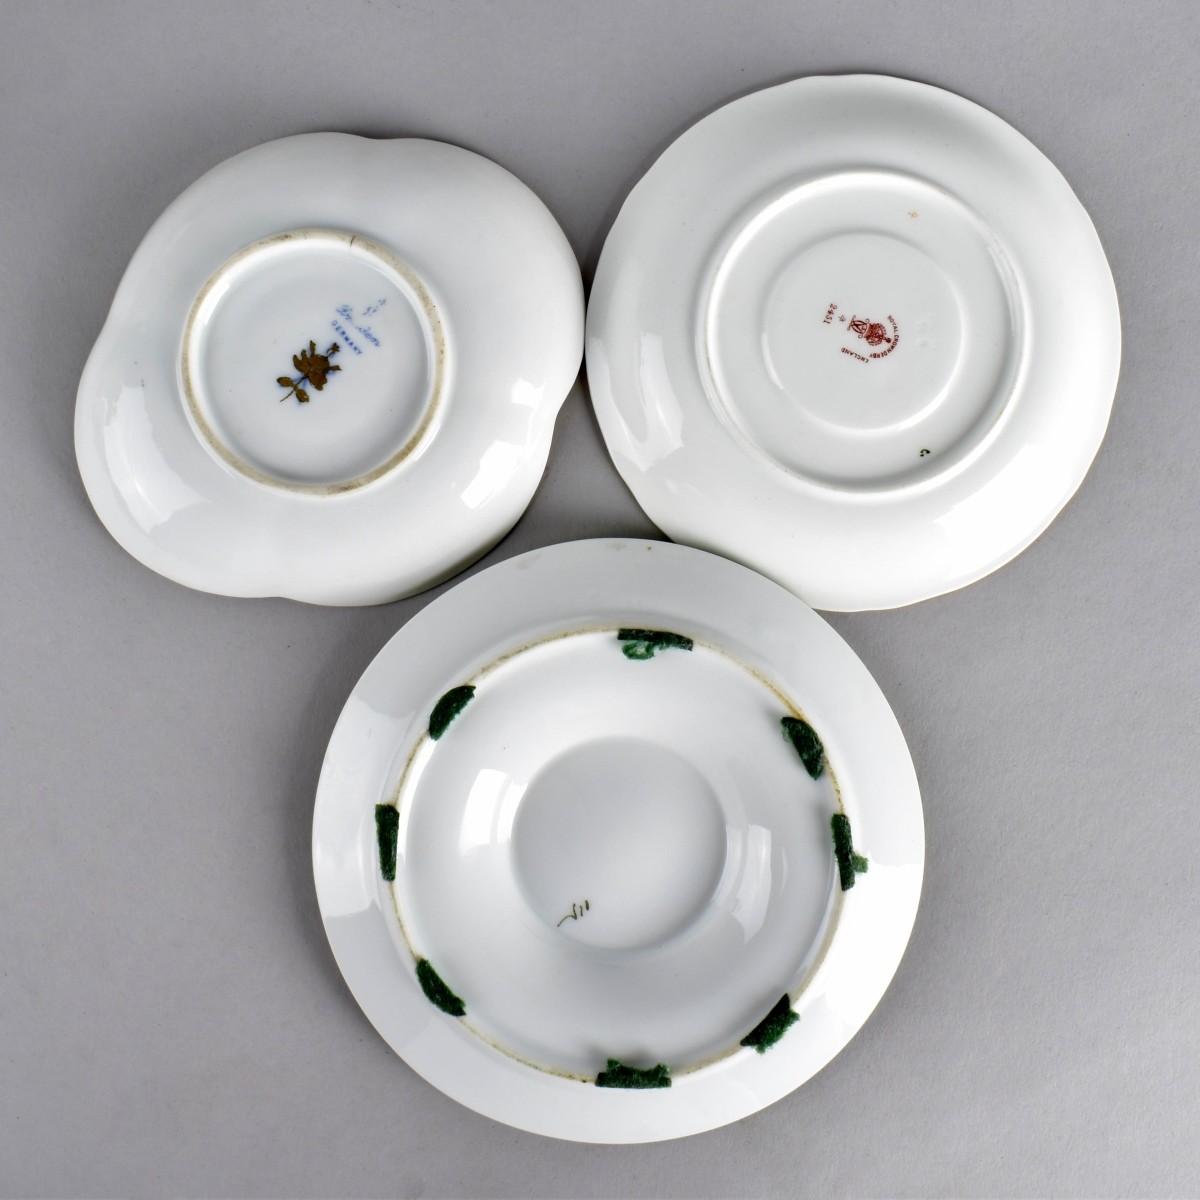 Vintage Porcelain Cups and Saucers Set